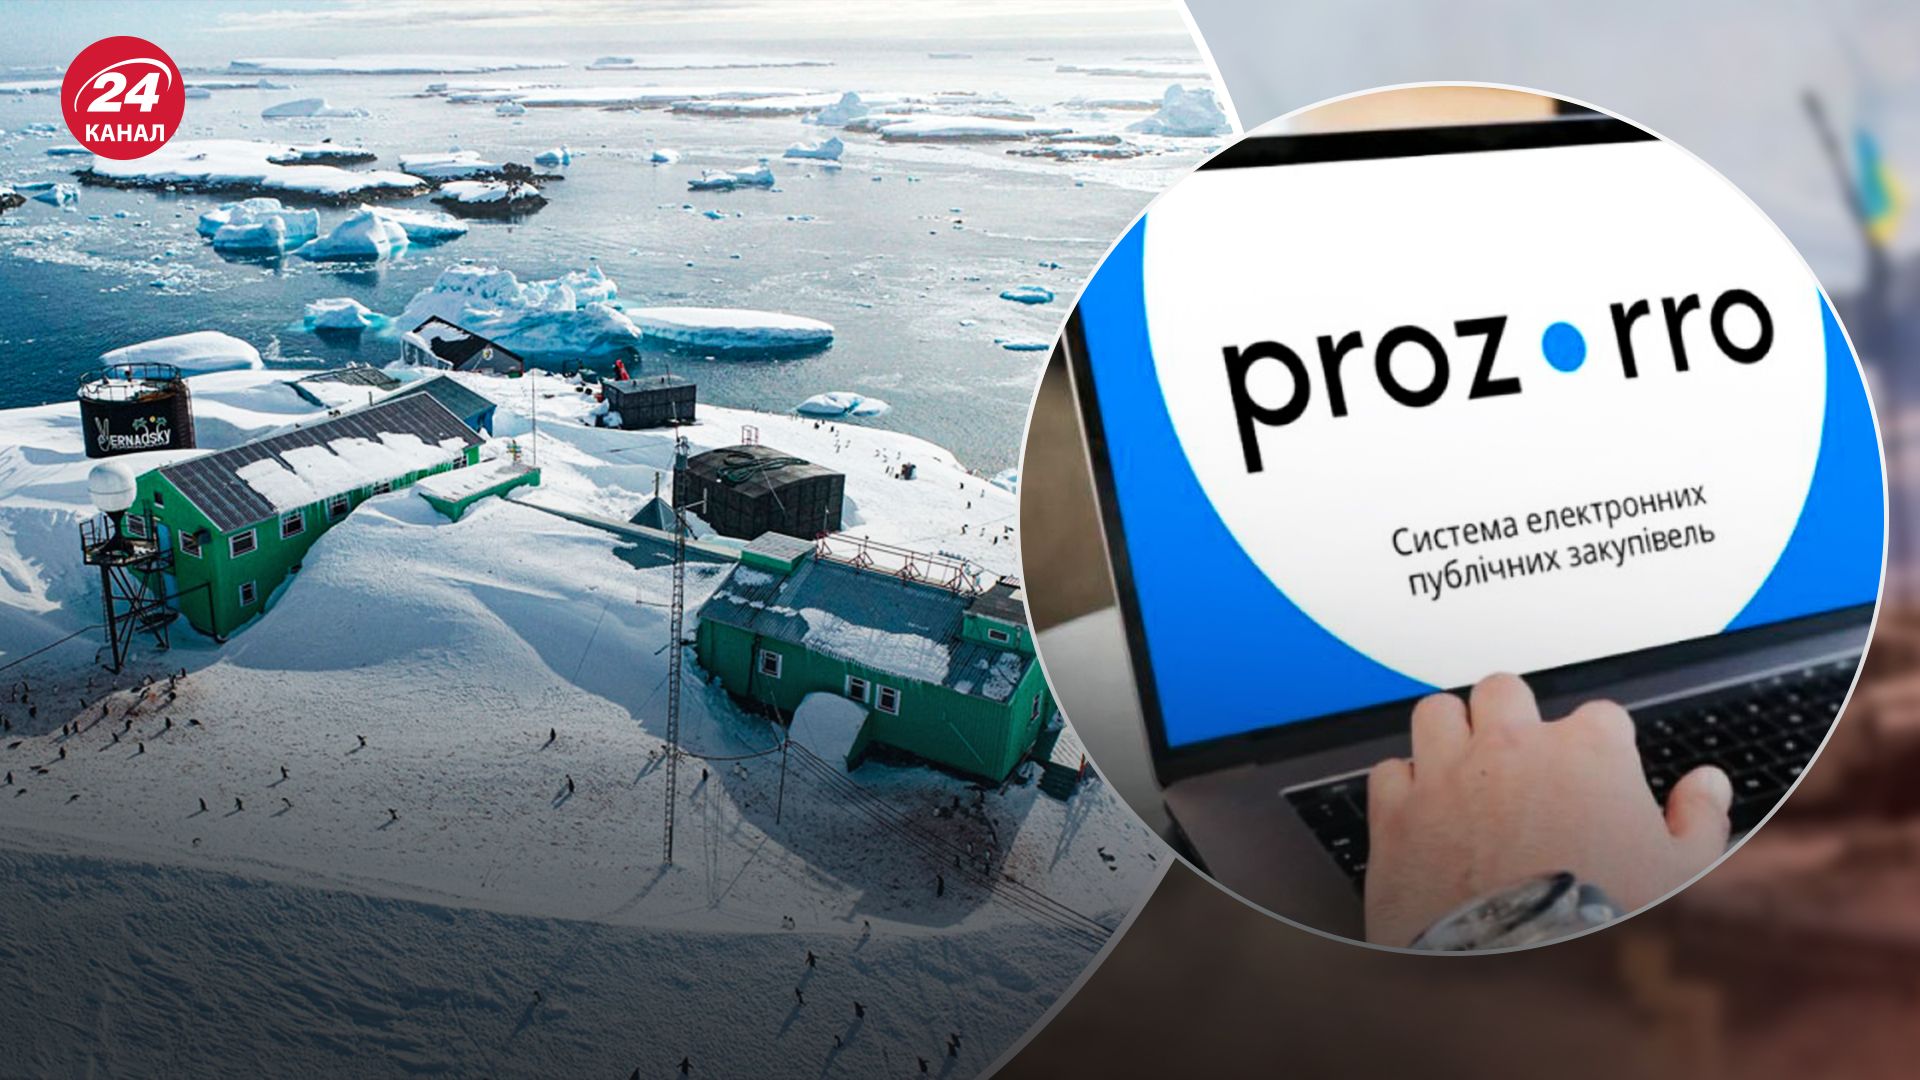 В Национальном антарктическом научном центре уже отреагировали на скандал